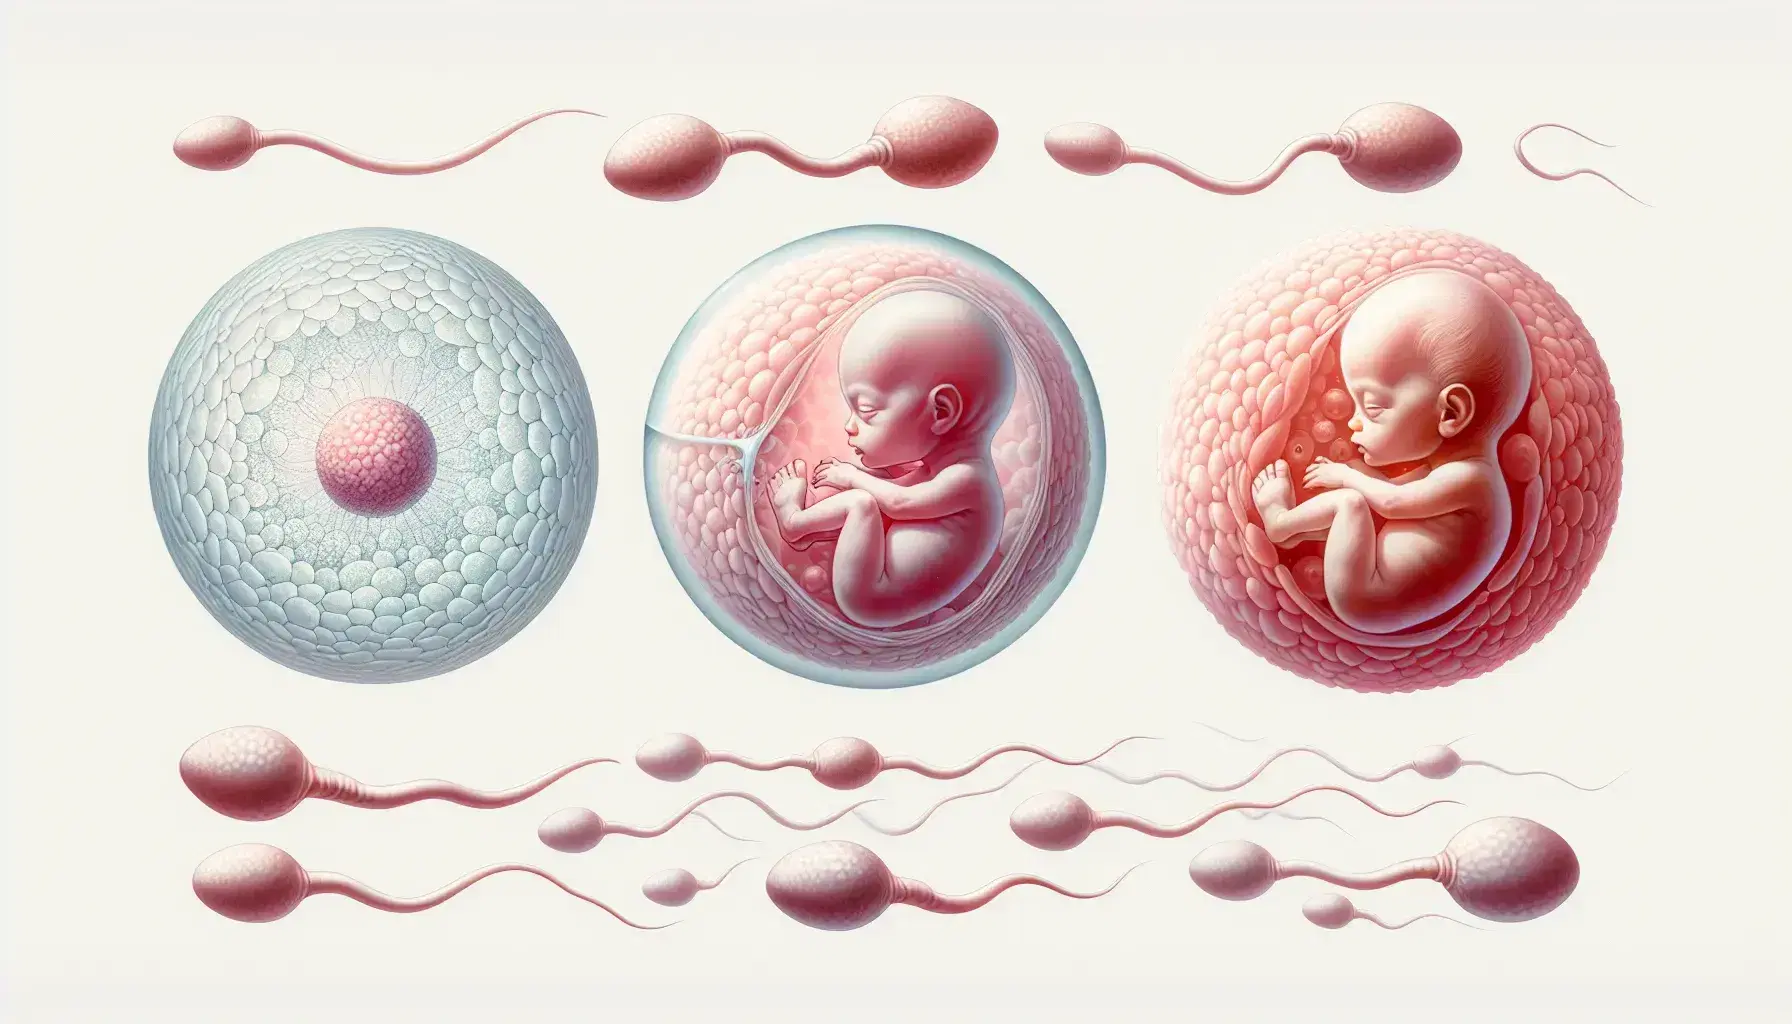 Secuencia de desarrollo embrionario con óvulo rodeado de espermatozoides, embrión multicelular y feto en posición fetal con detalles definidos.